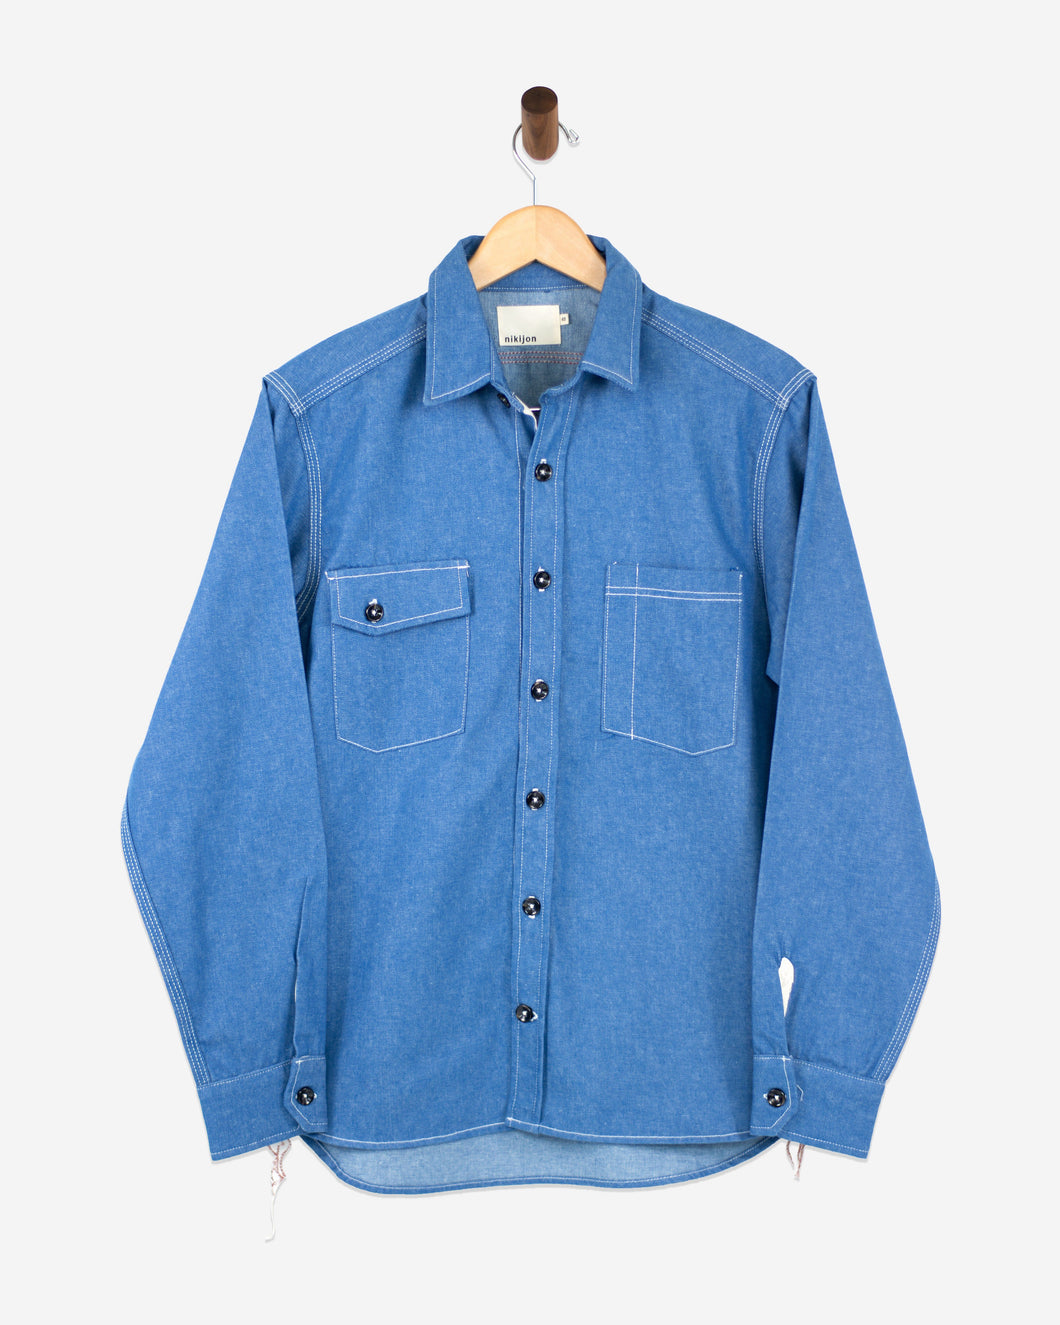 Wrangler Men's Denim Work Shirt Style MS70119